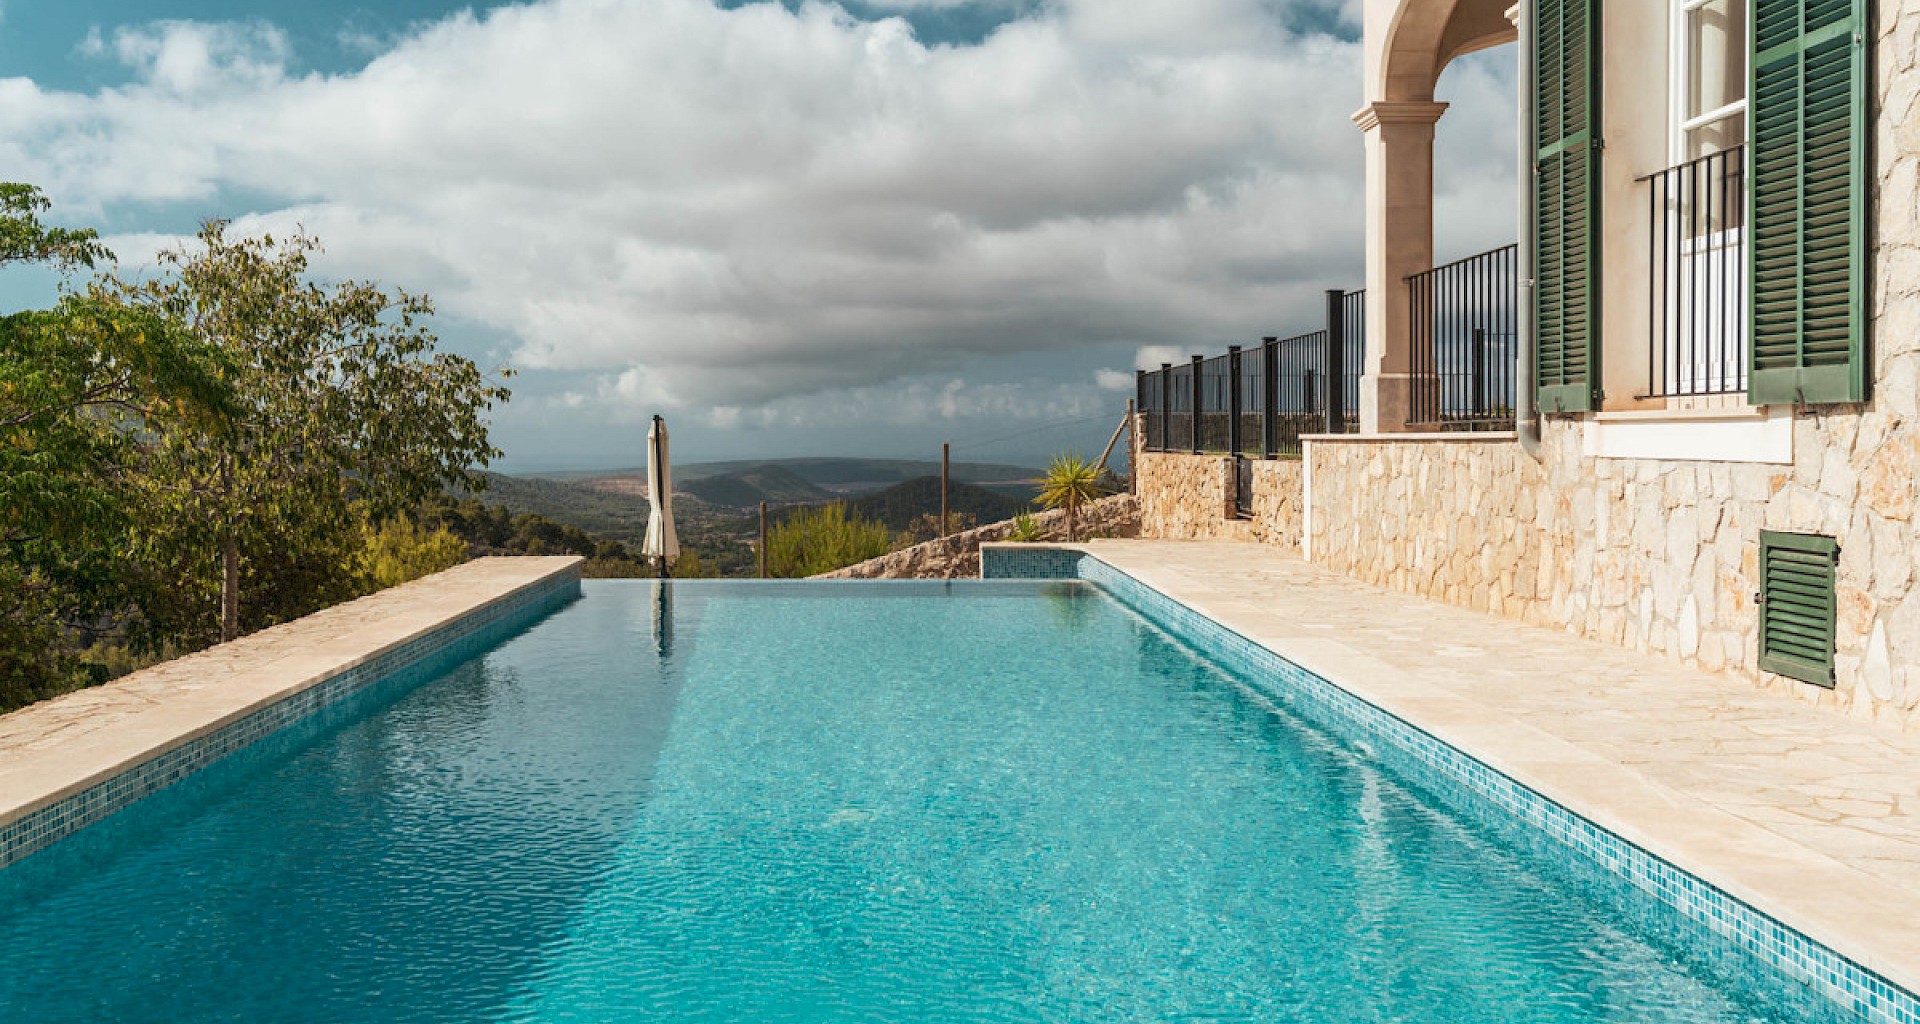 KROHN & LUEDEMANN Wunderschöne Mediterrane Villa in Son Font Calvia Mallorca 